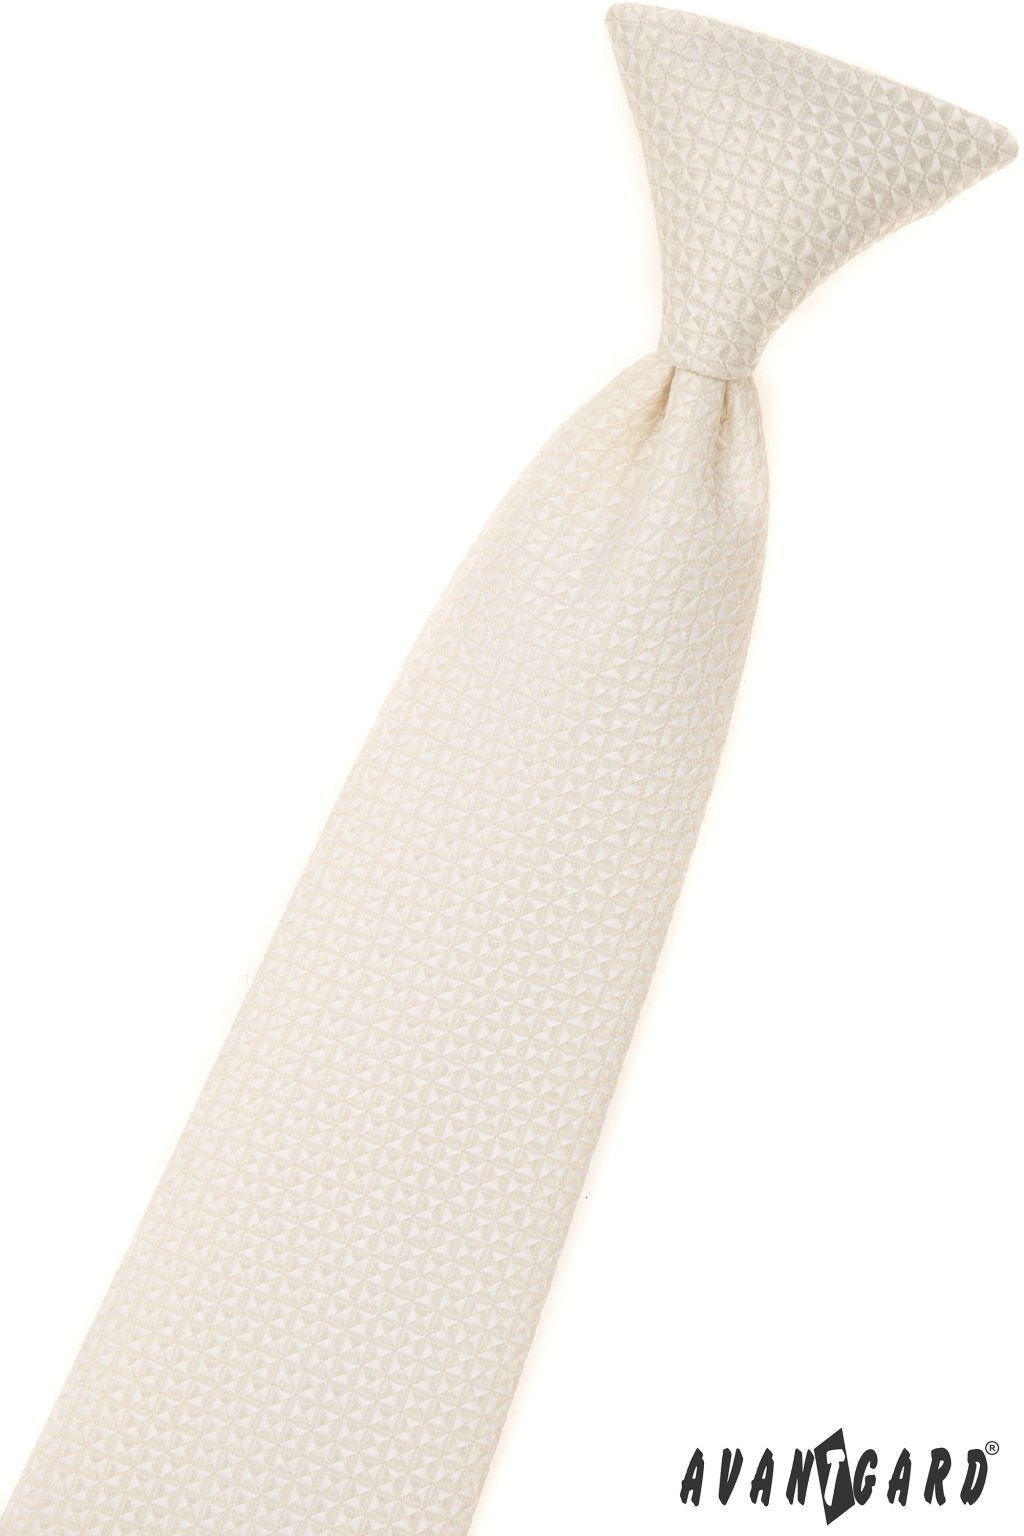 Chlapecká kravata smetanová 558-9339